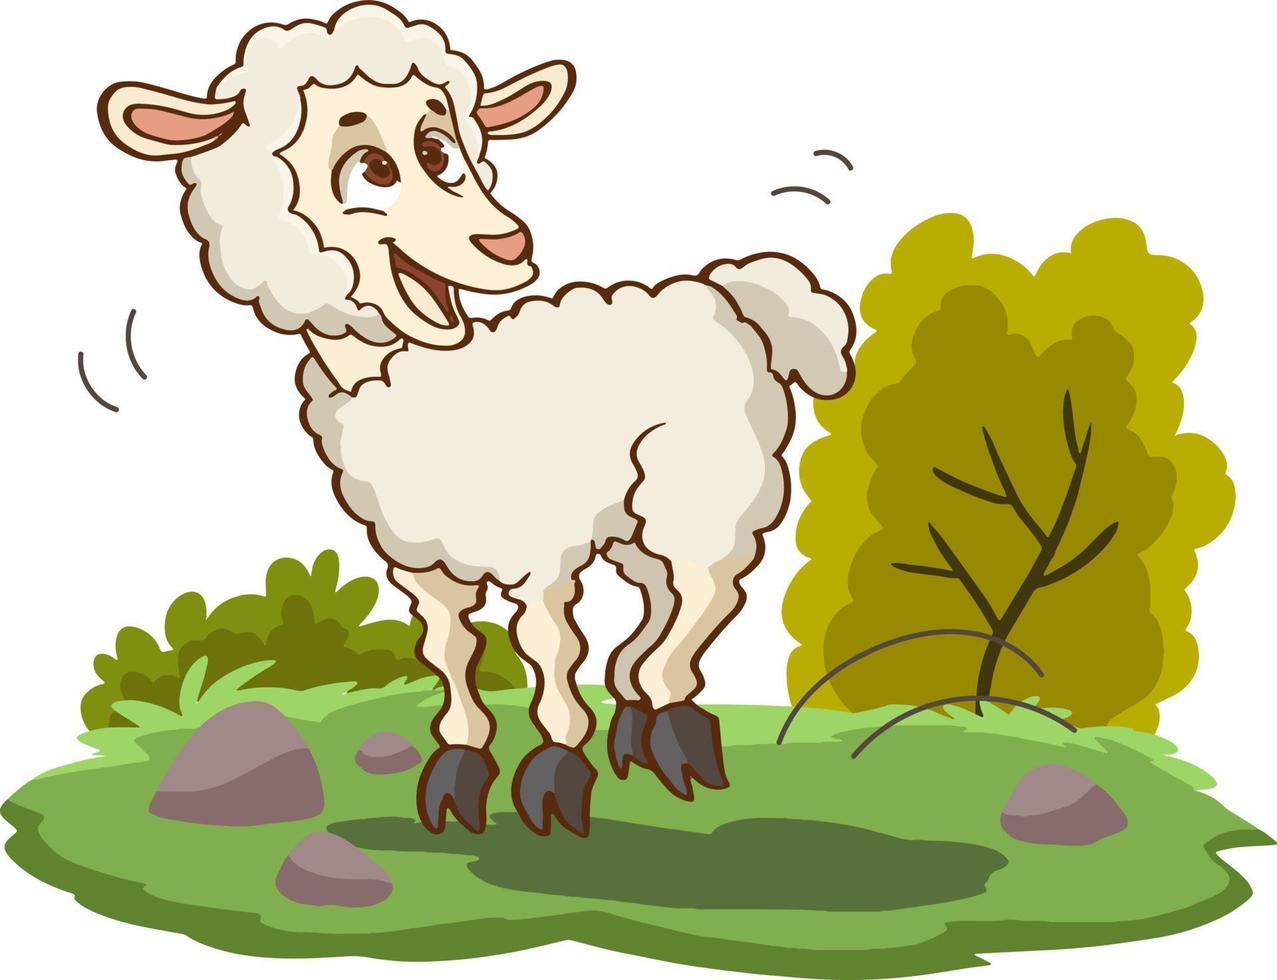 jeune mouton. agneau de personnage de dessin animé isolé sur fond blanc. vecteur